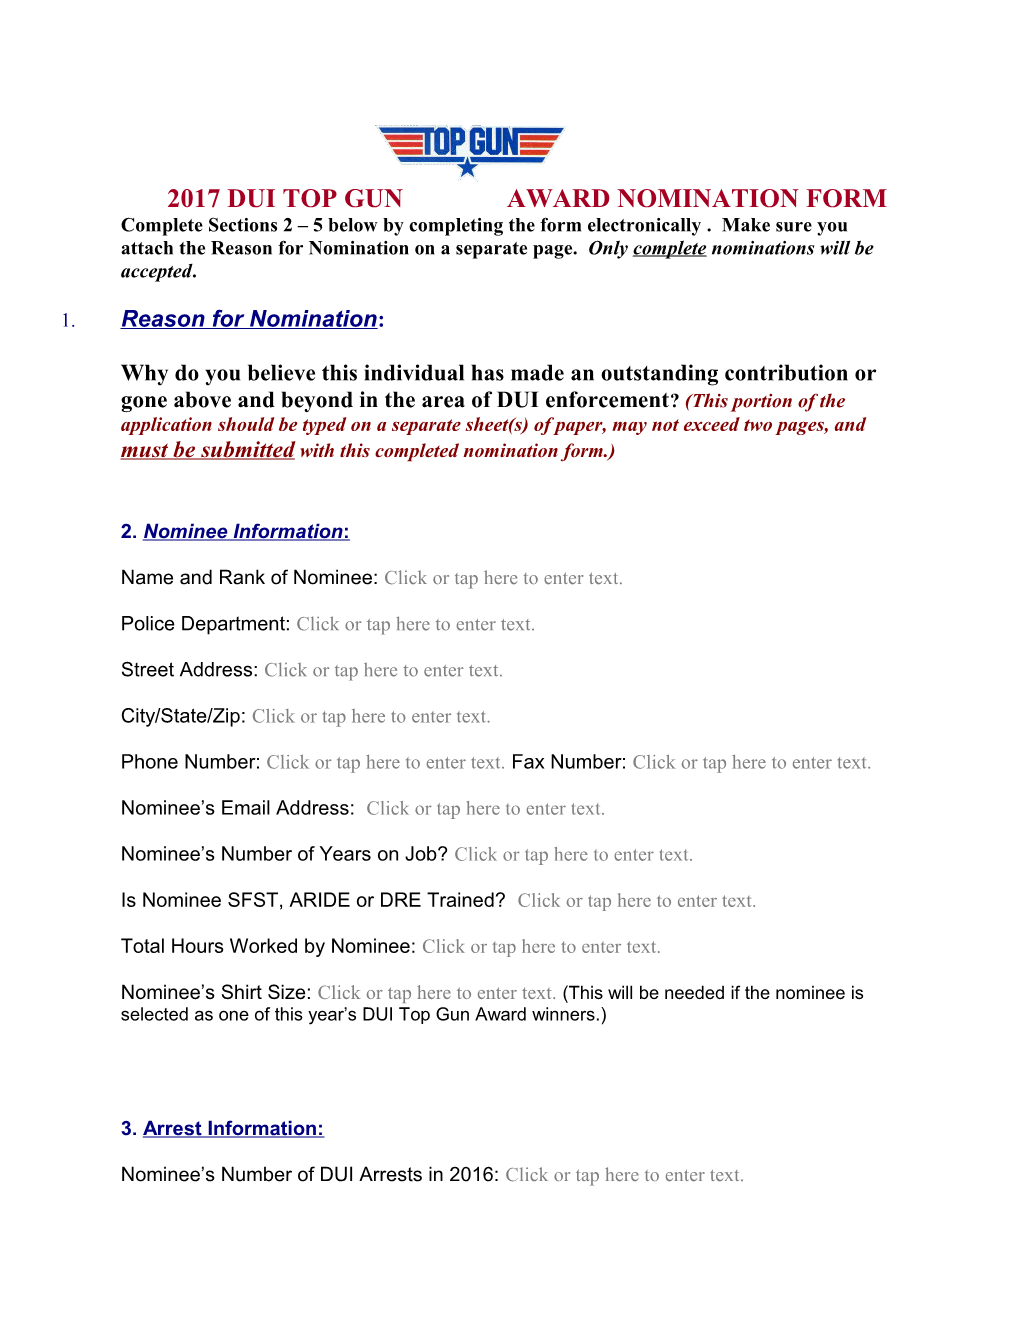 2009 Dui Top Gun Award Nomination Form